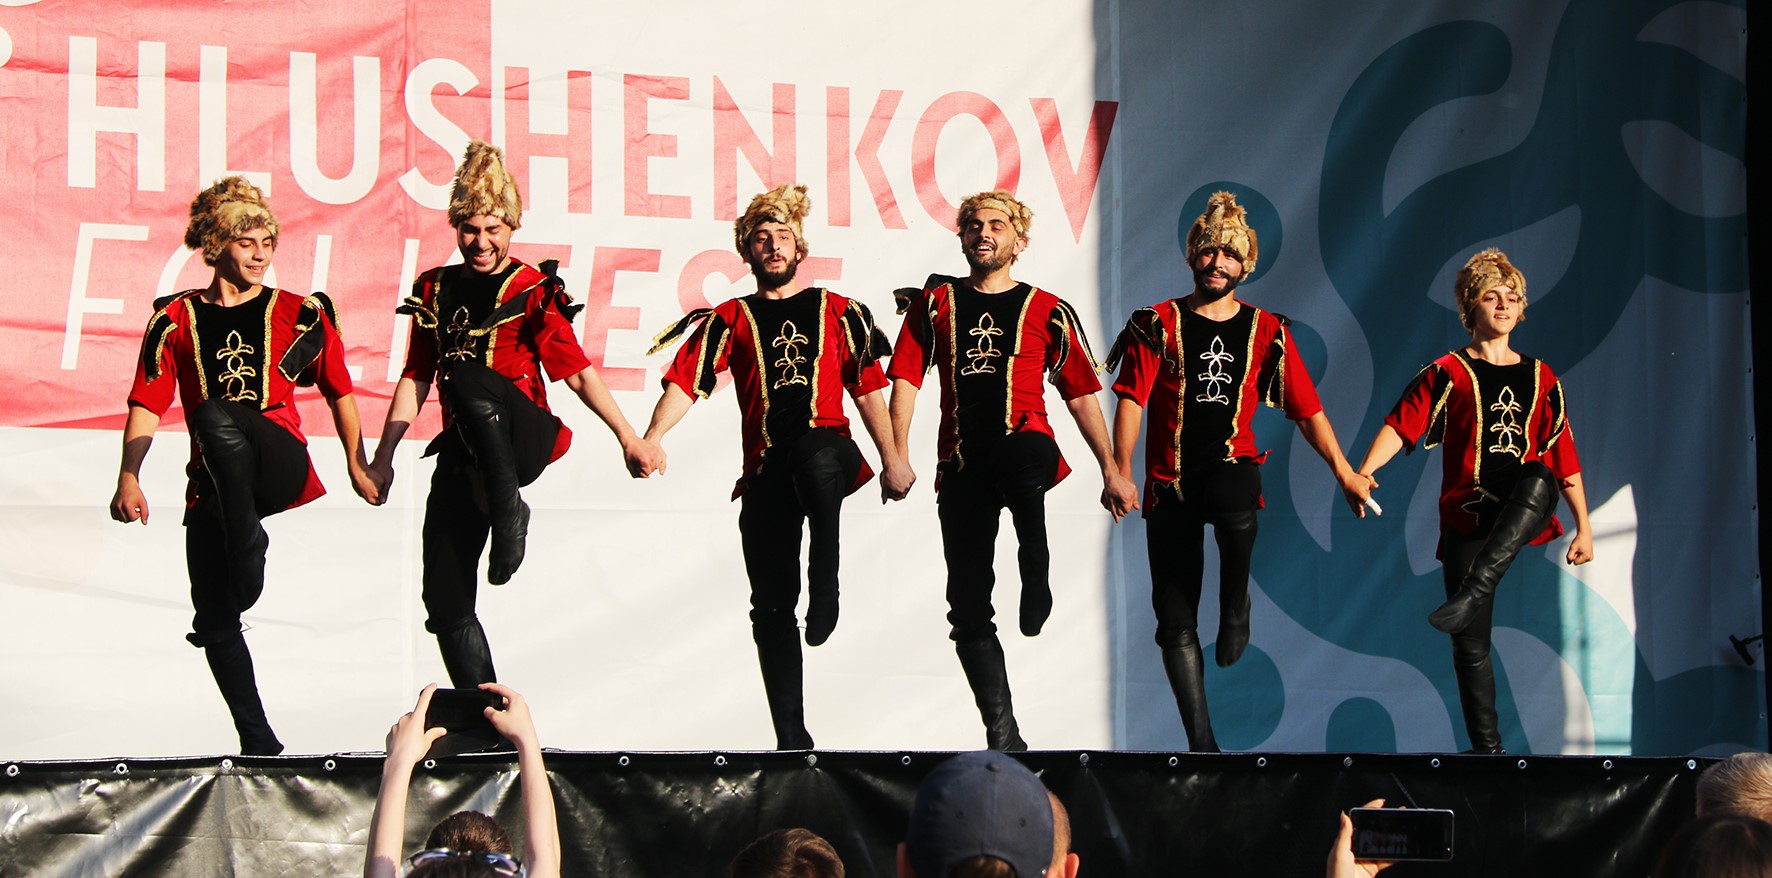 HlushenkovFolkfest - 2019